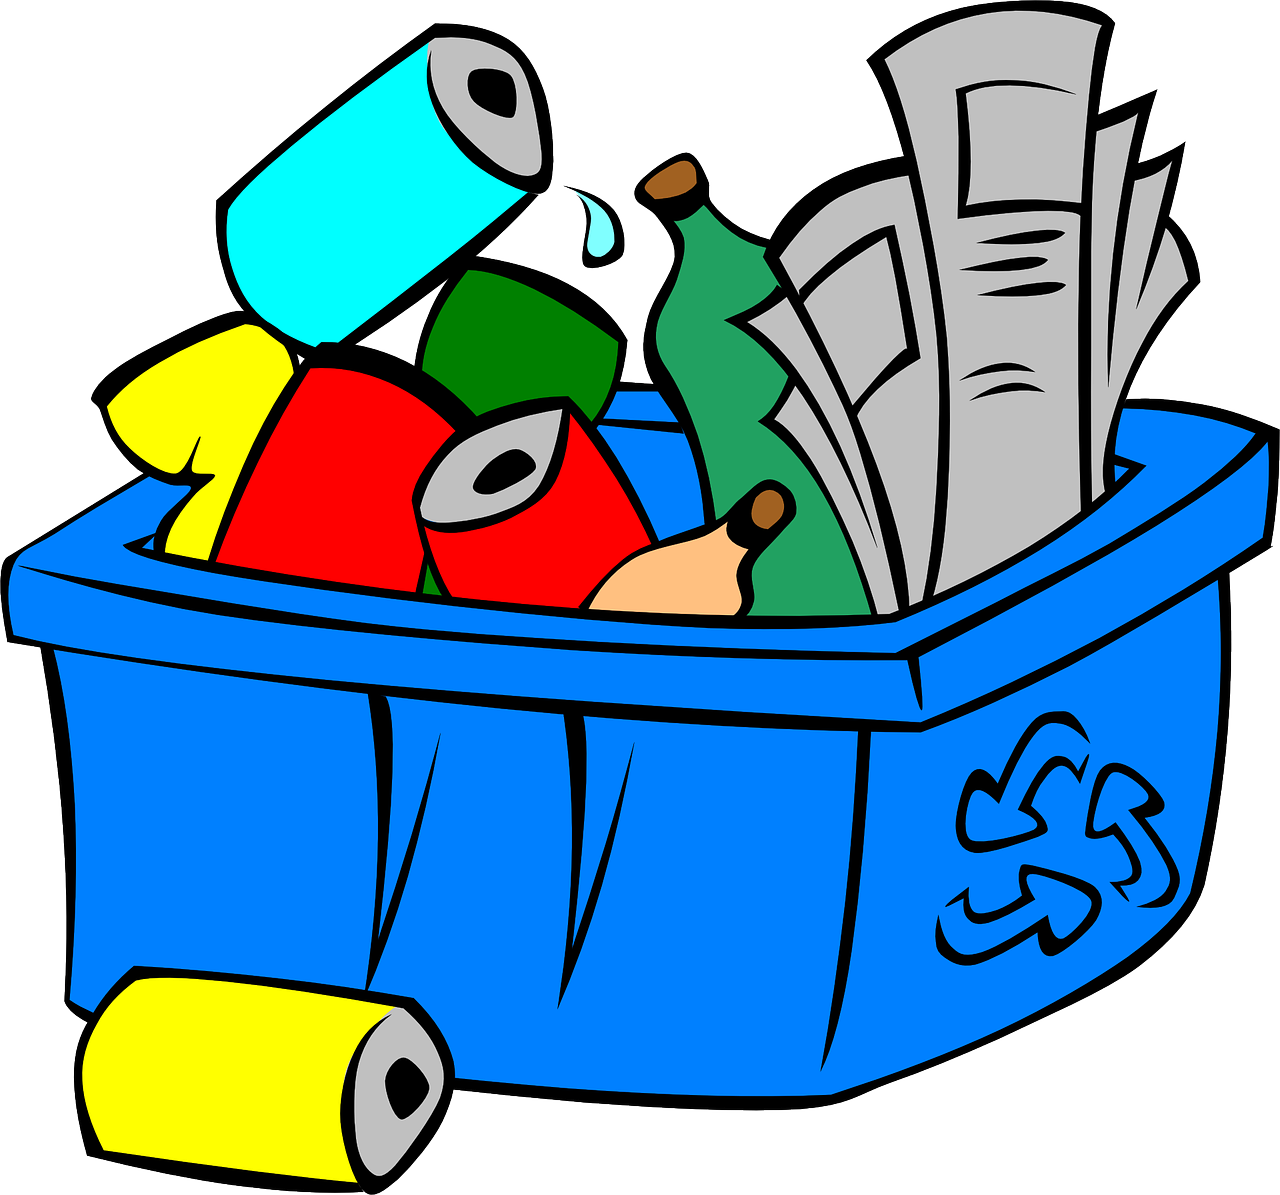 Recycling Bin Fullof Items PNG